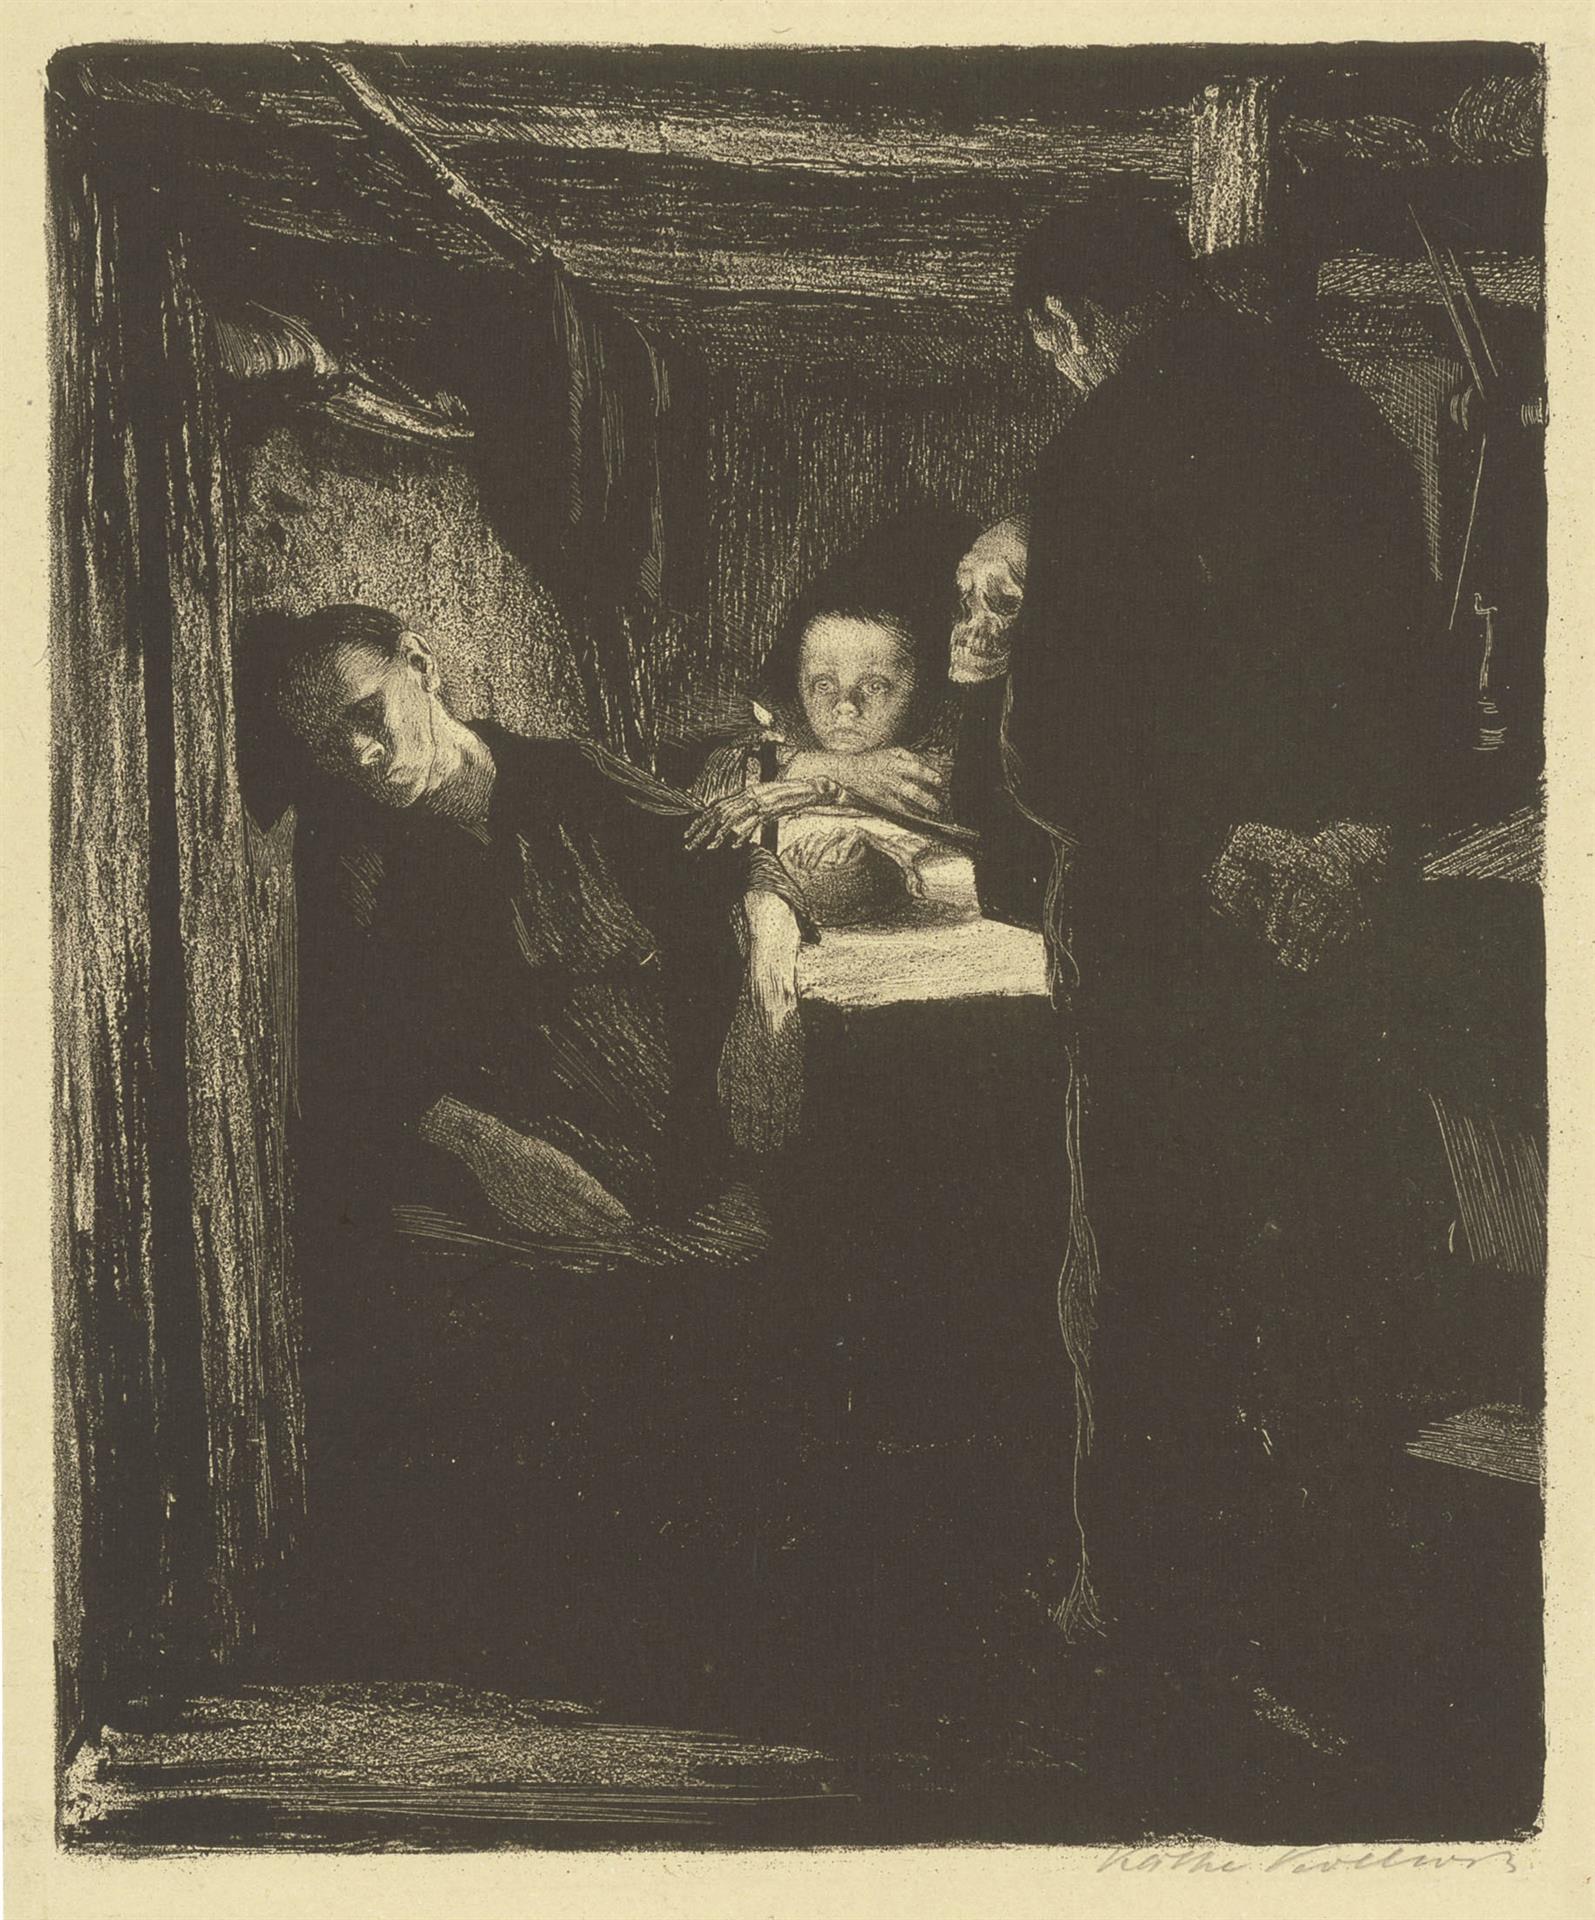 Käthe Kollwitz, Mort, planche 2 du cycle »Une Révolte des tisserands«, 1893-97, lithographie au crayon, à la plume et au pinceau, grattoirs, Kn 34 A b